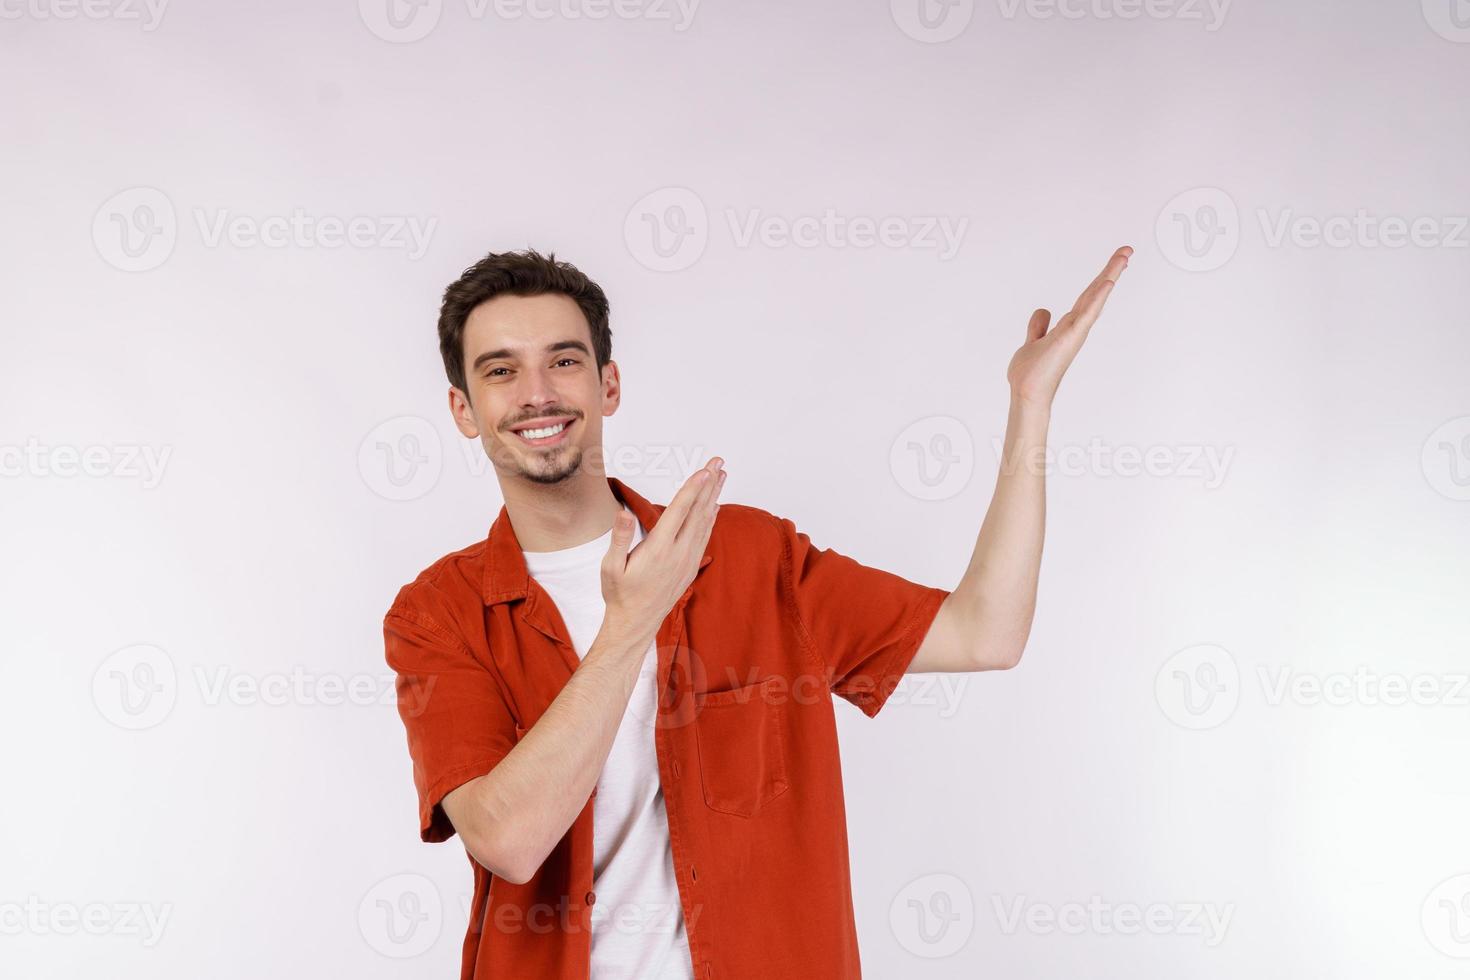 Portrait of happy smiling young man présentant et montrant votre texte ou produit isolé sur fond blanc photo